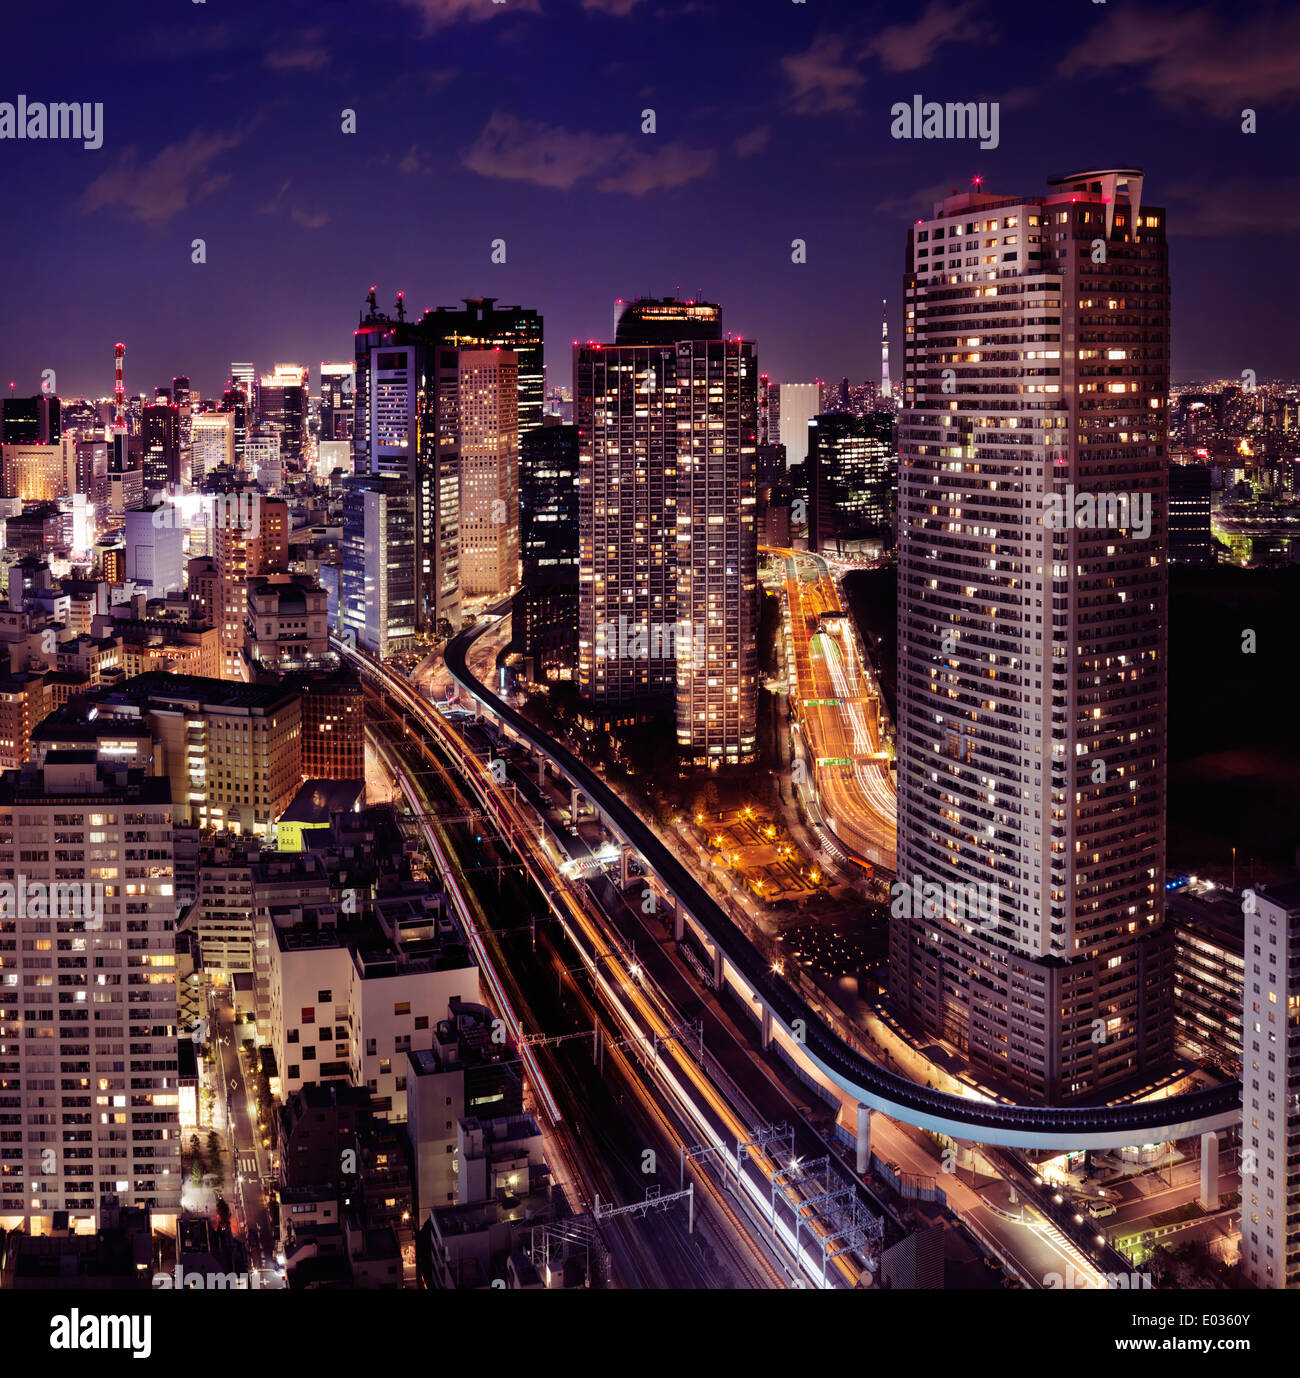 Licencia disponible en MaximImages.com - Vista aérea nocturna de la ciudad de Tokio con autopistas iluminadas y líneas de tren. Minato, Tokio, Japón. Foto de stock